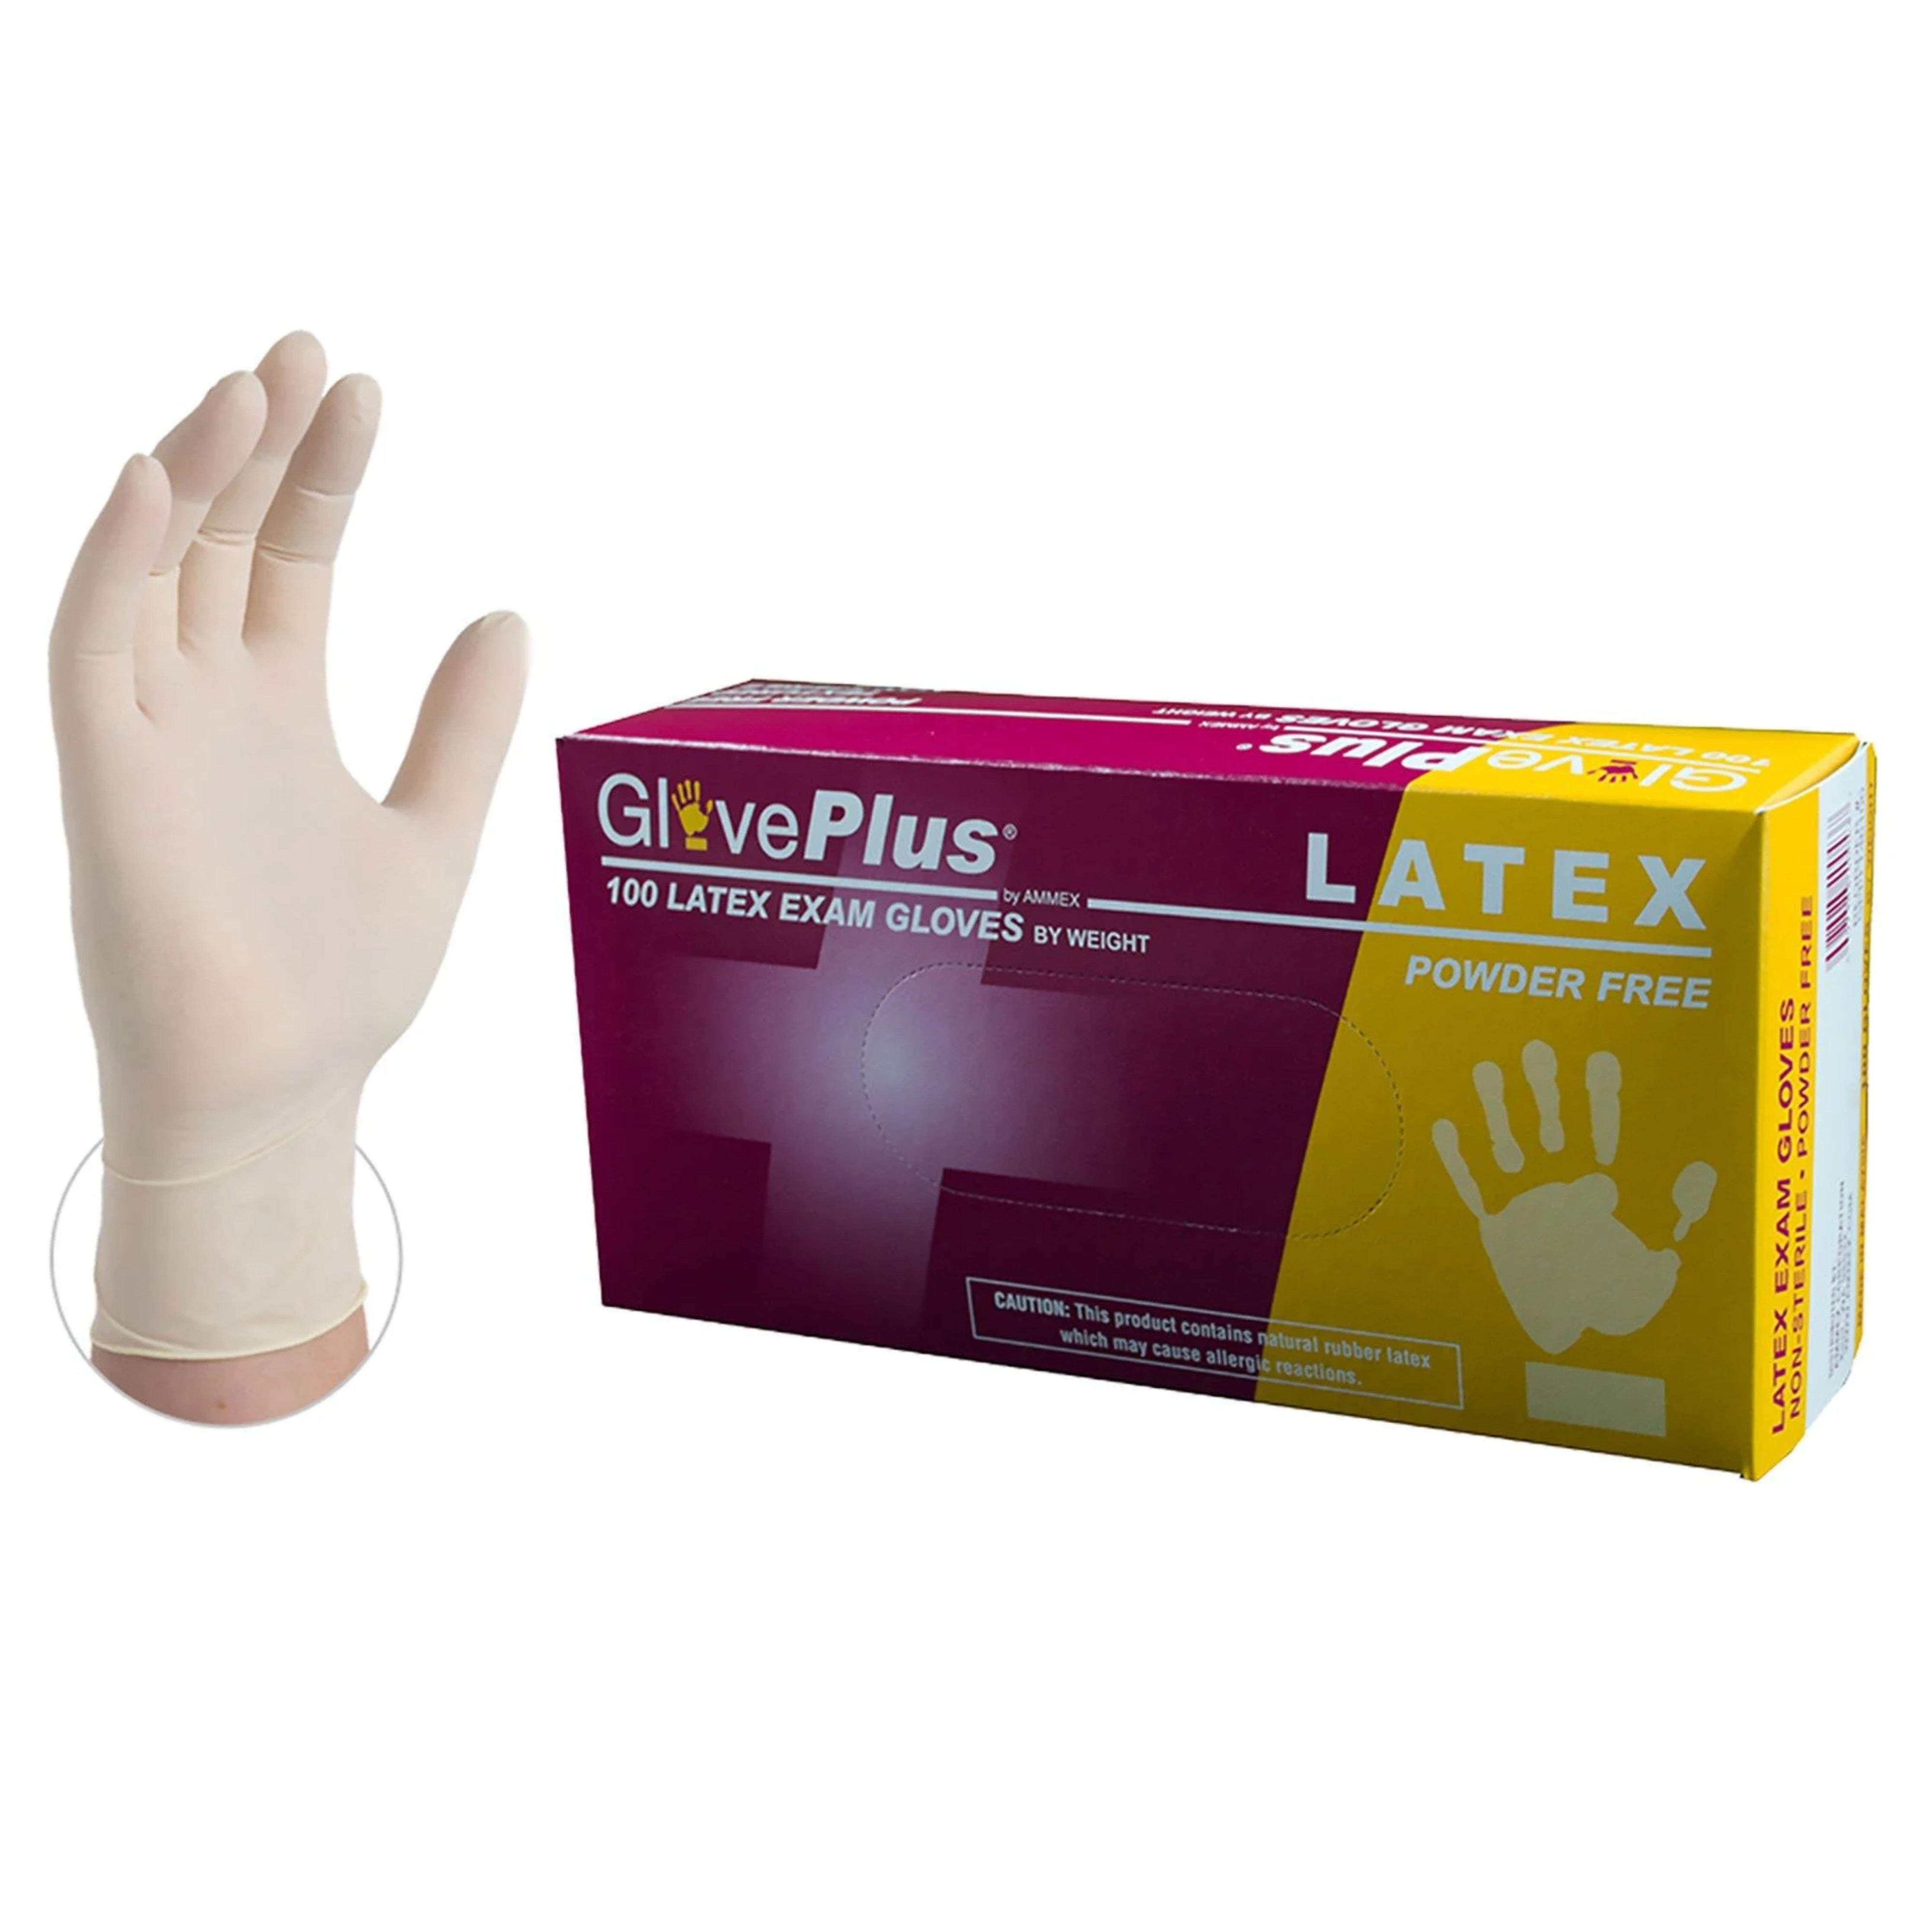 GlovePlus Latex PF Medium 100 ct (medium)